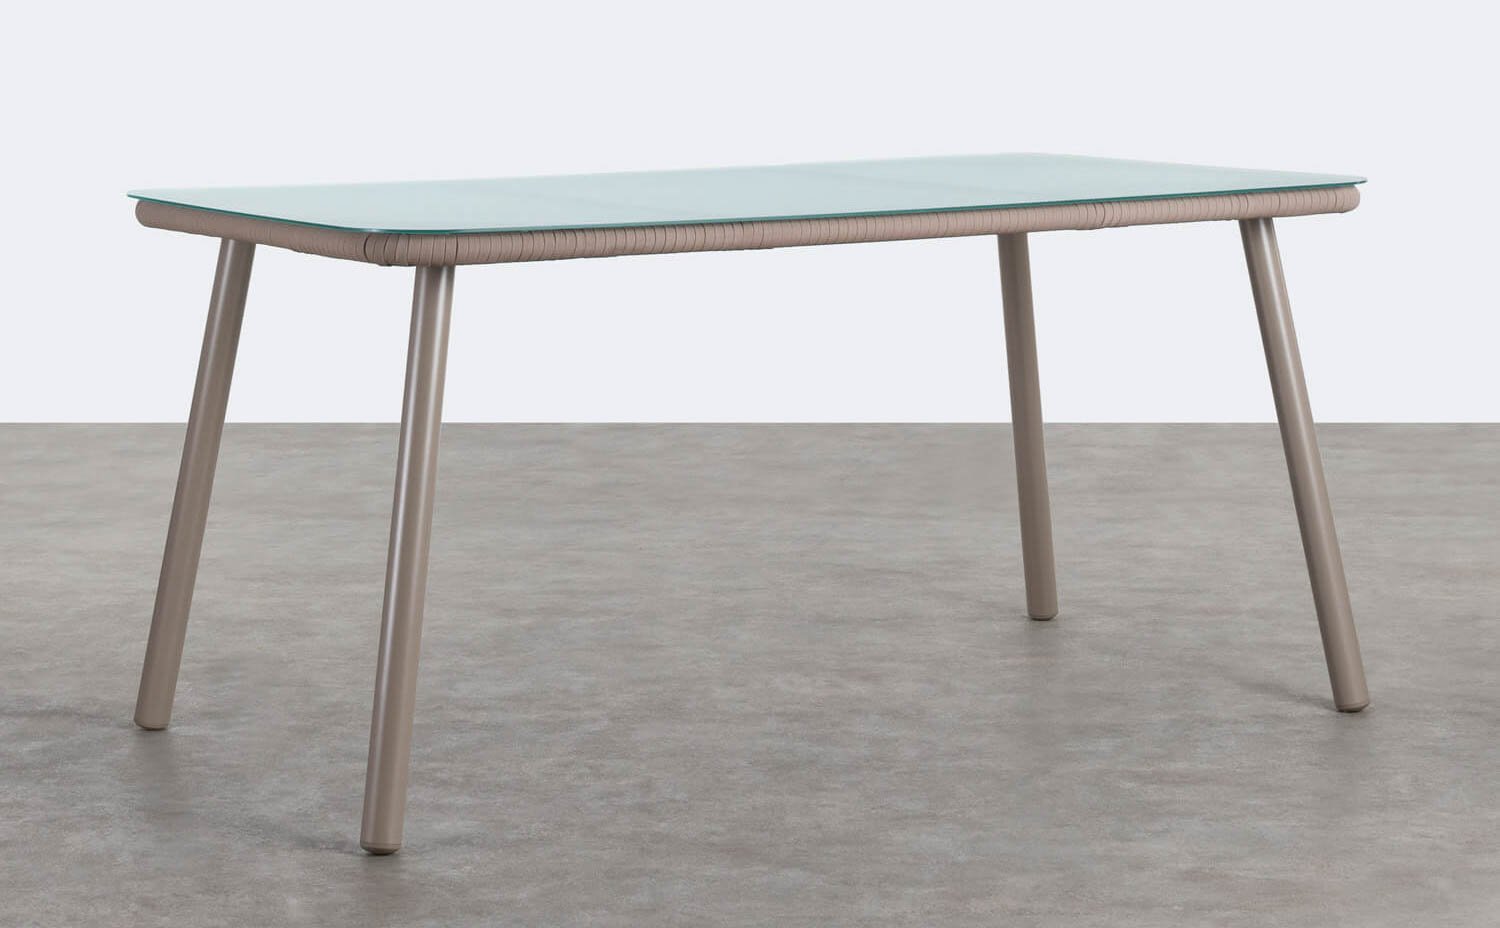 Tavolo da Pranzo Rettangolare in Alluminio e Cristallo (160x90 cm) Drian, immagine della galleria 1